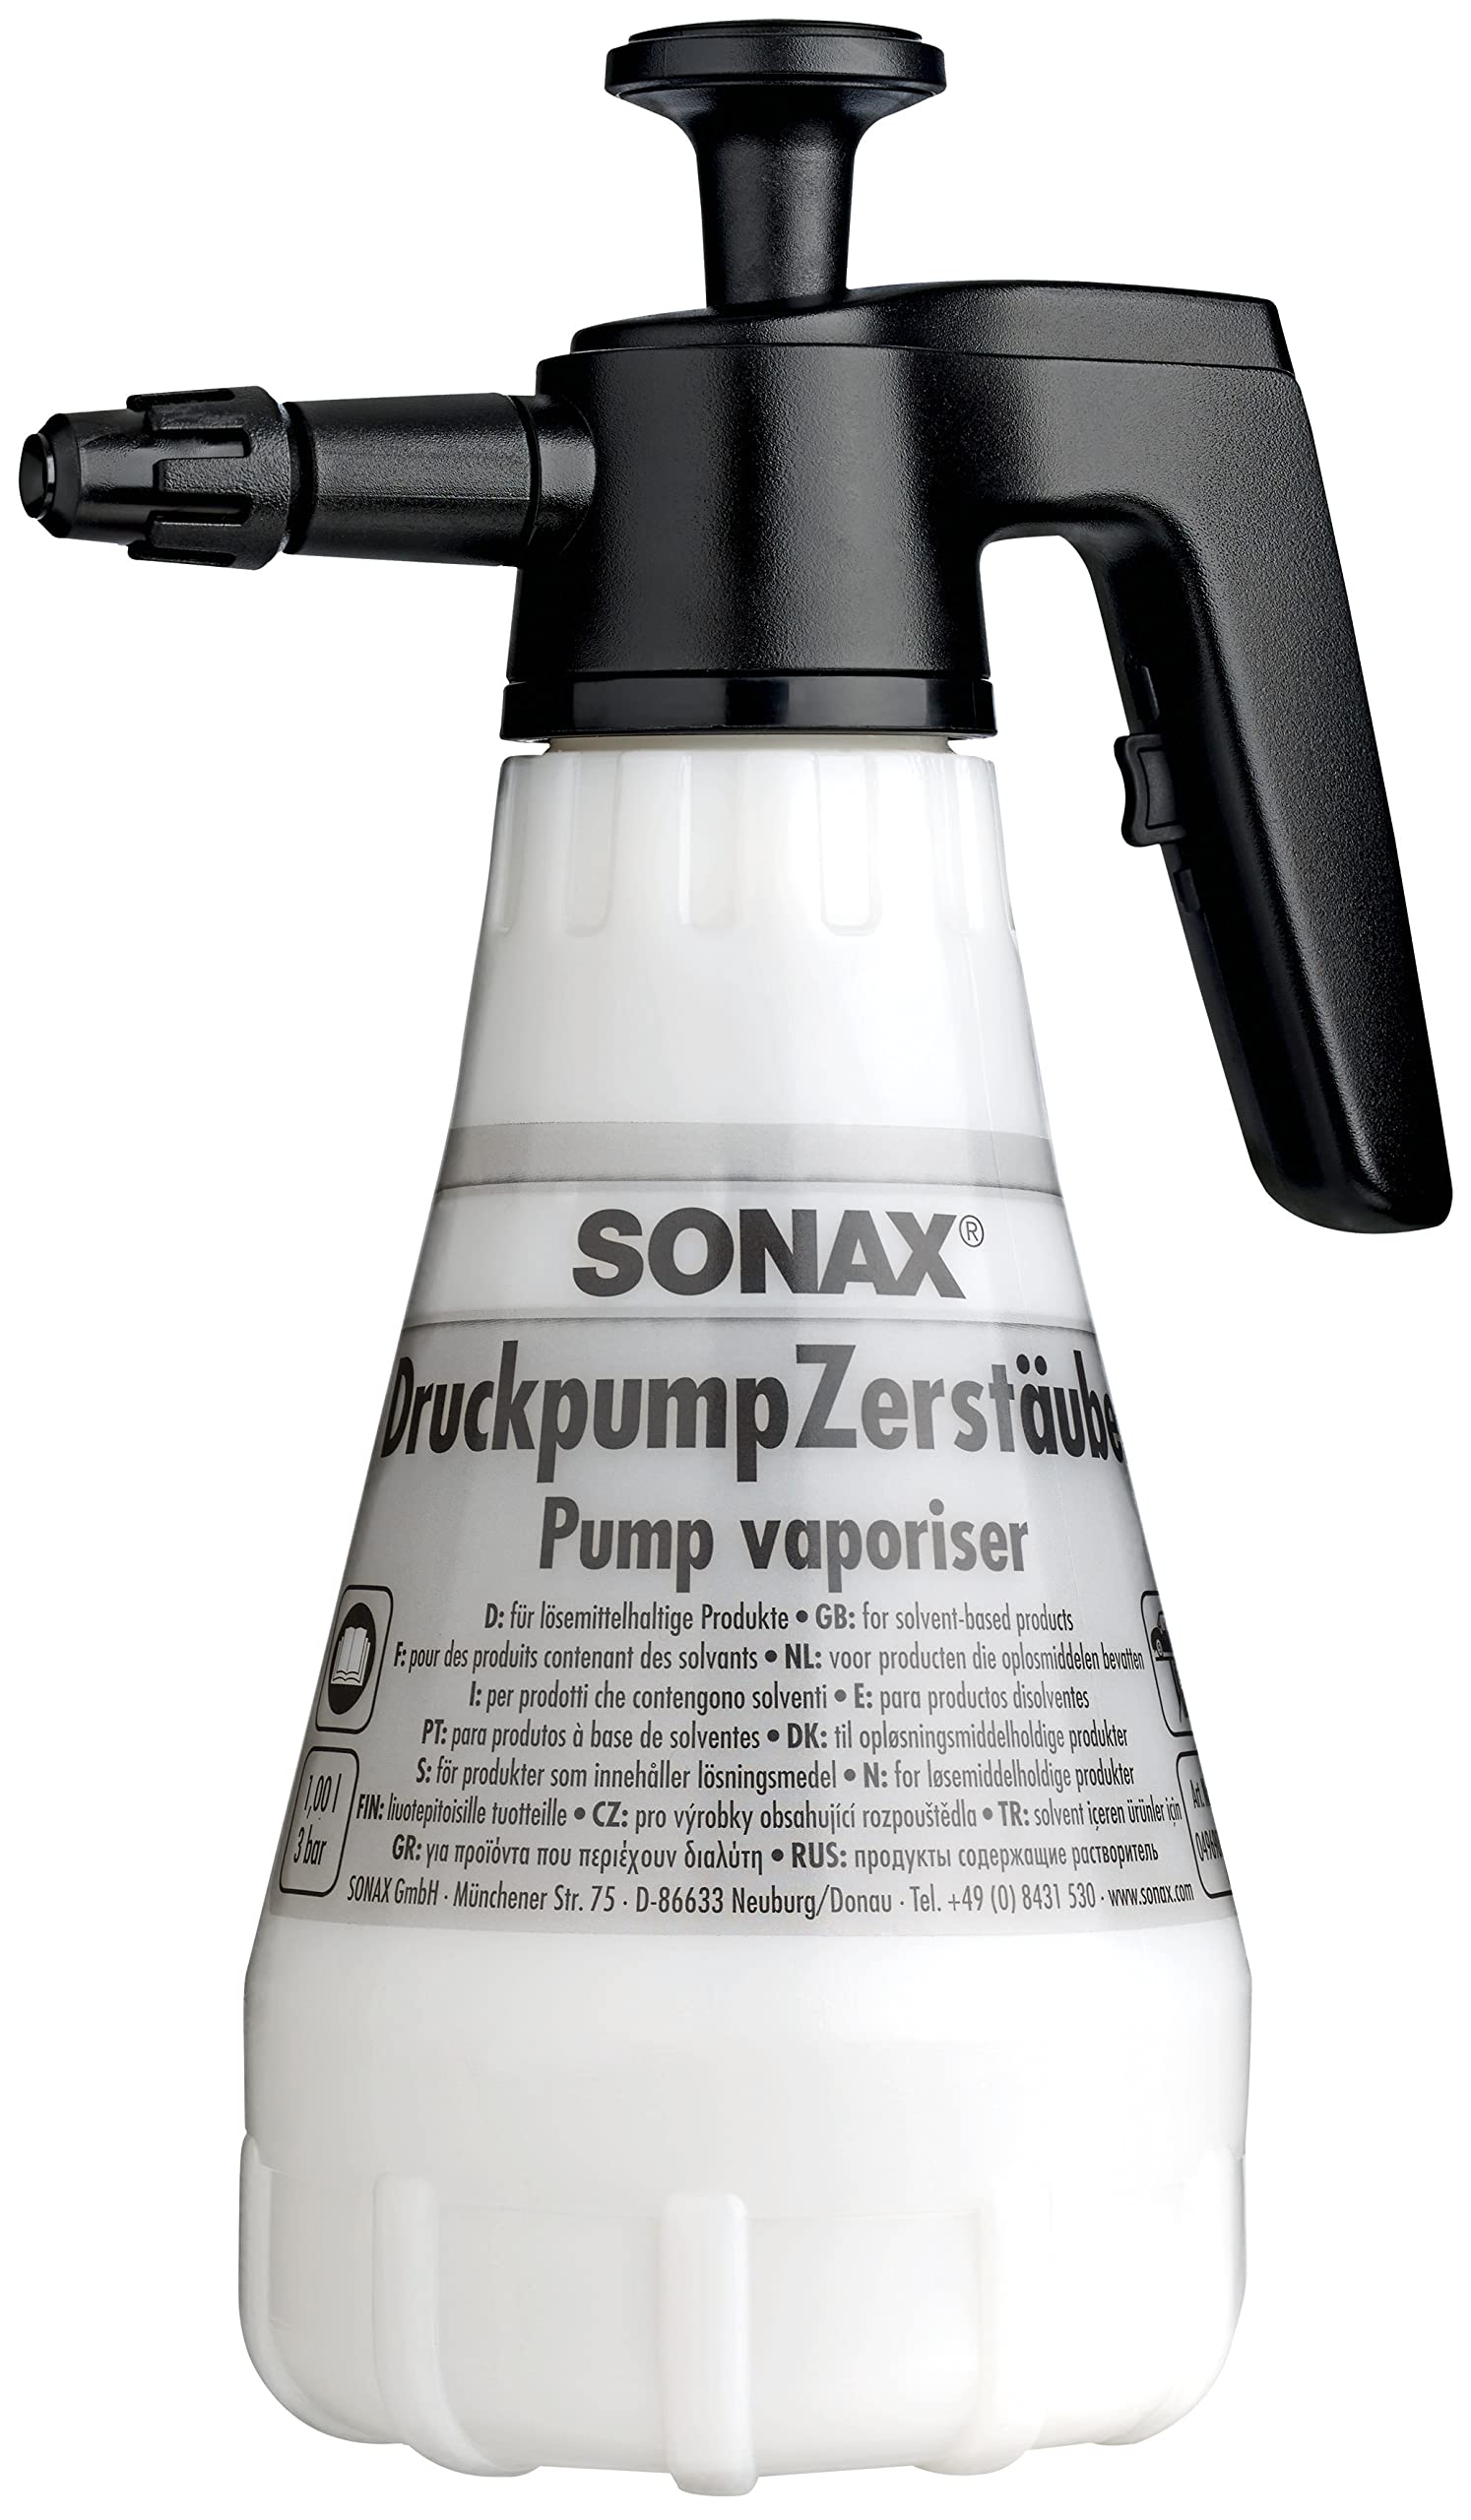 SONAX DruckpumpZerstäuber lösemittelbeständig (1 Stück) zum bequemen Aufbringen von lösemittelhaltigen Reinigungs- und Pflegemitteln | Art-Nr. 04969000 von SONAX